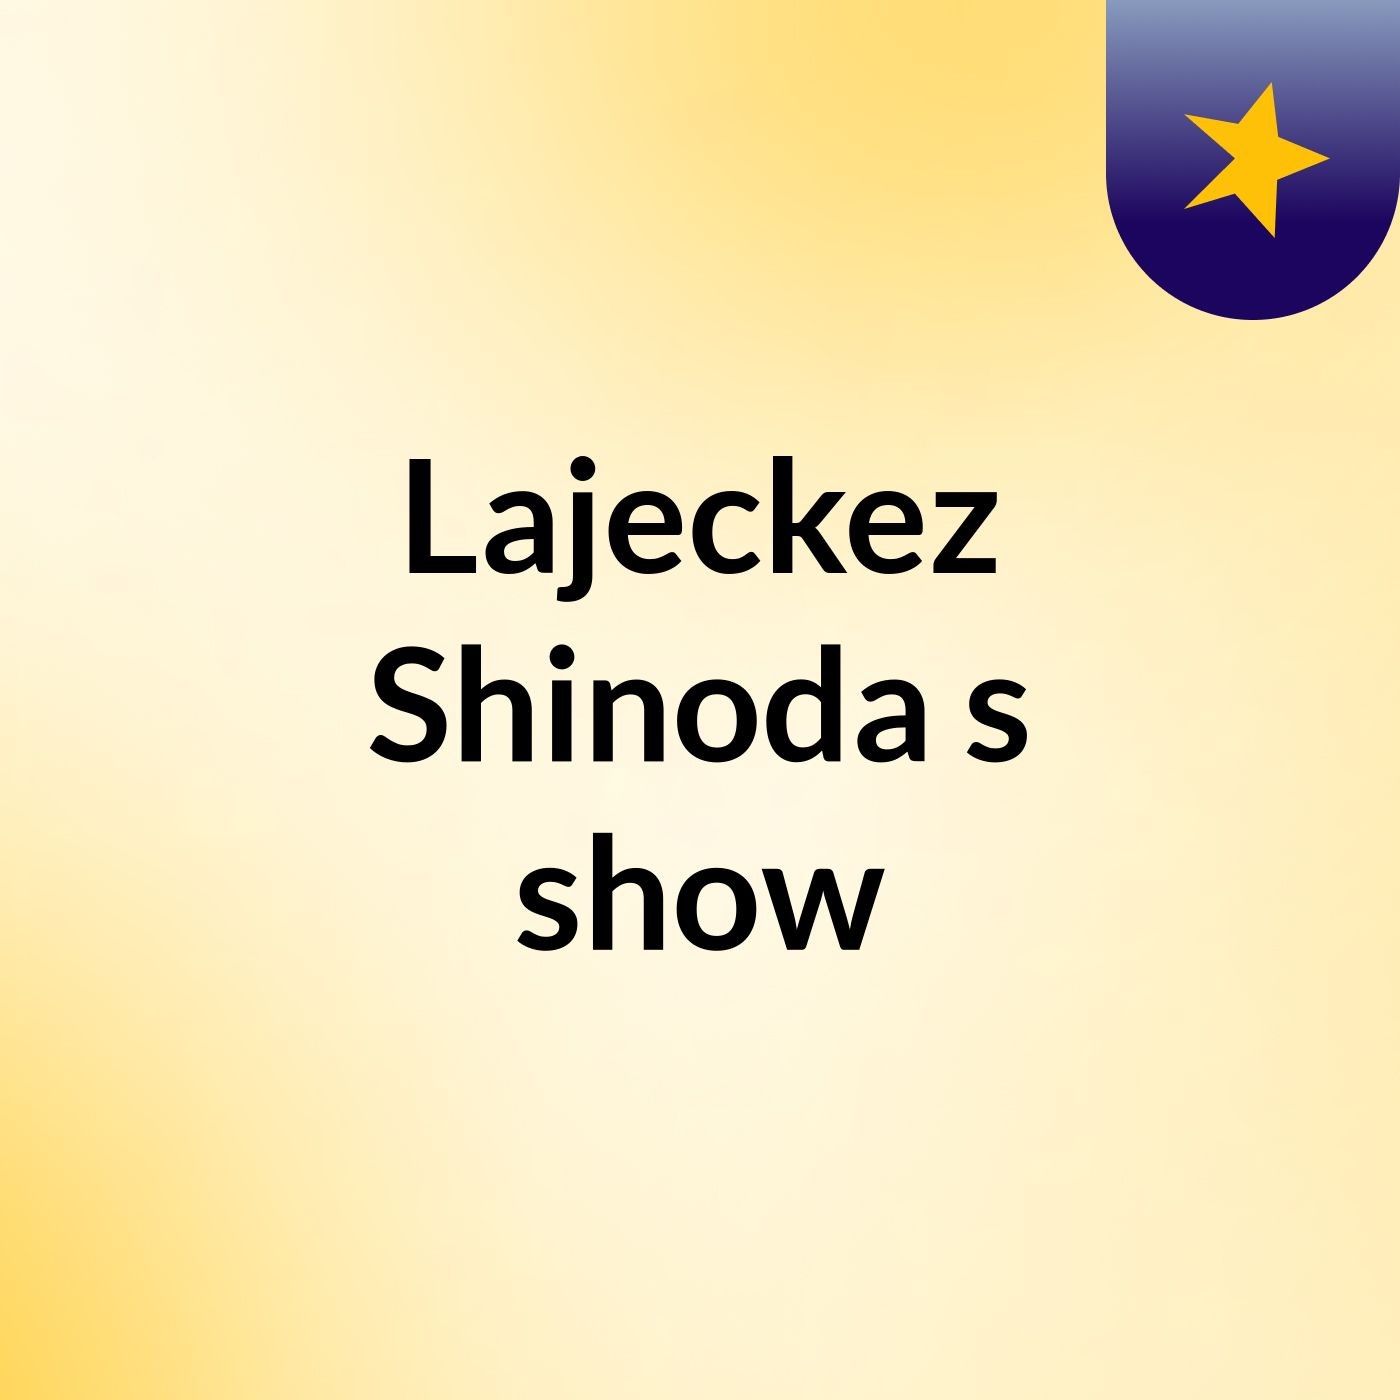 Episode 6 - Lajeckez Shinoda's show